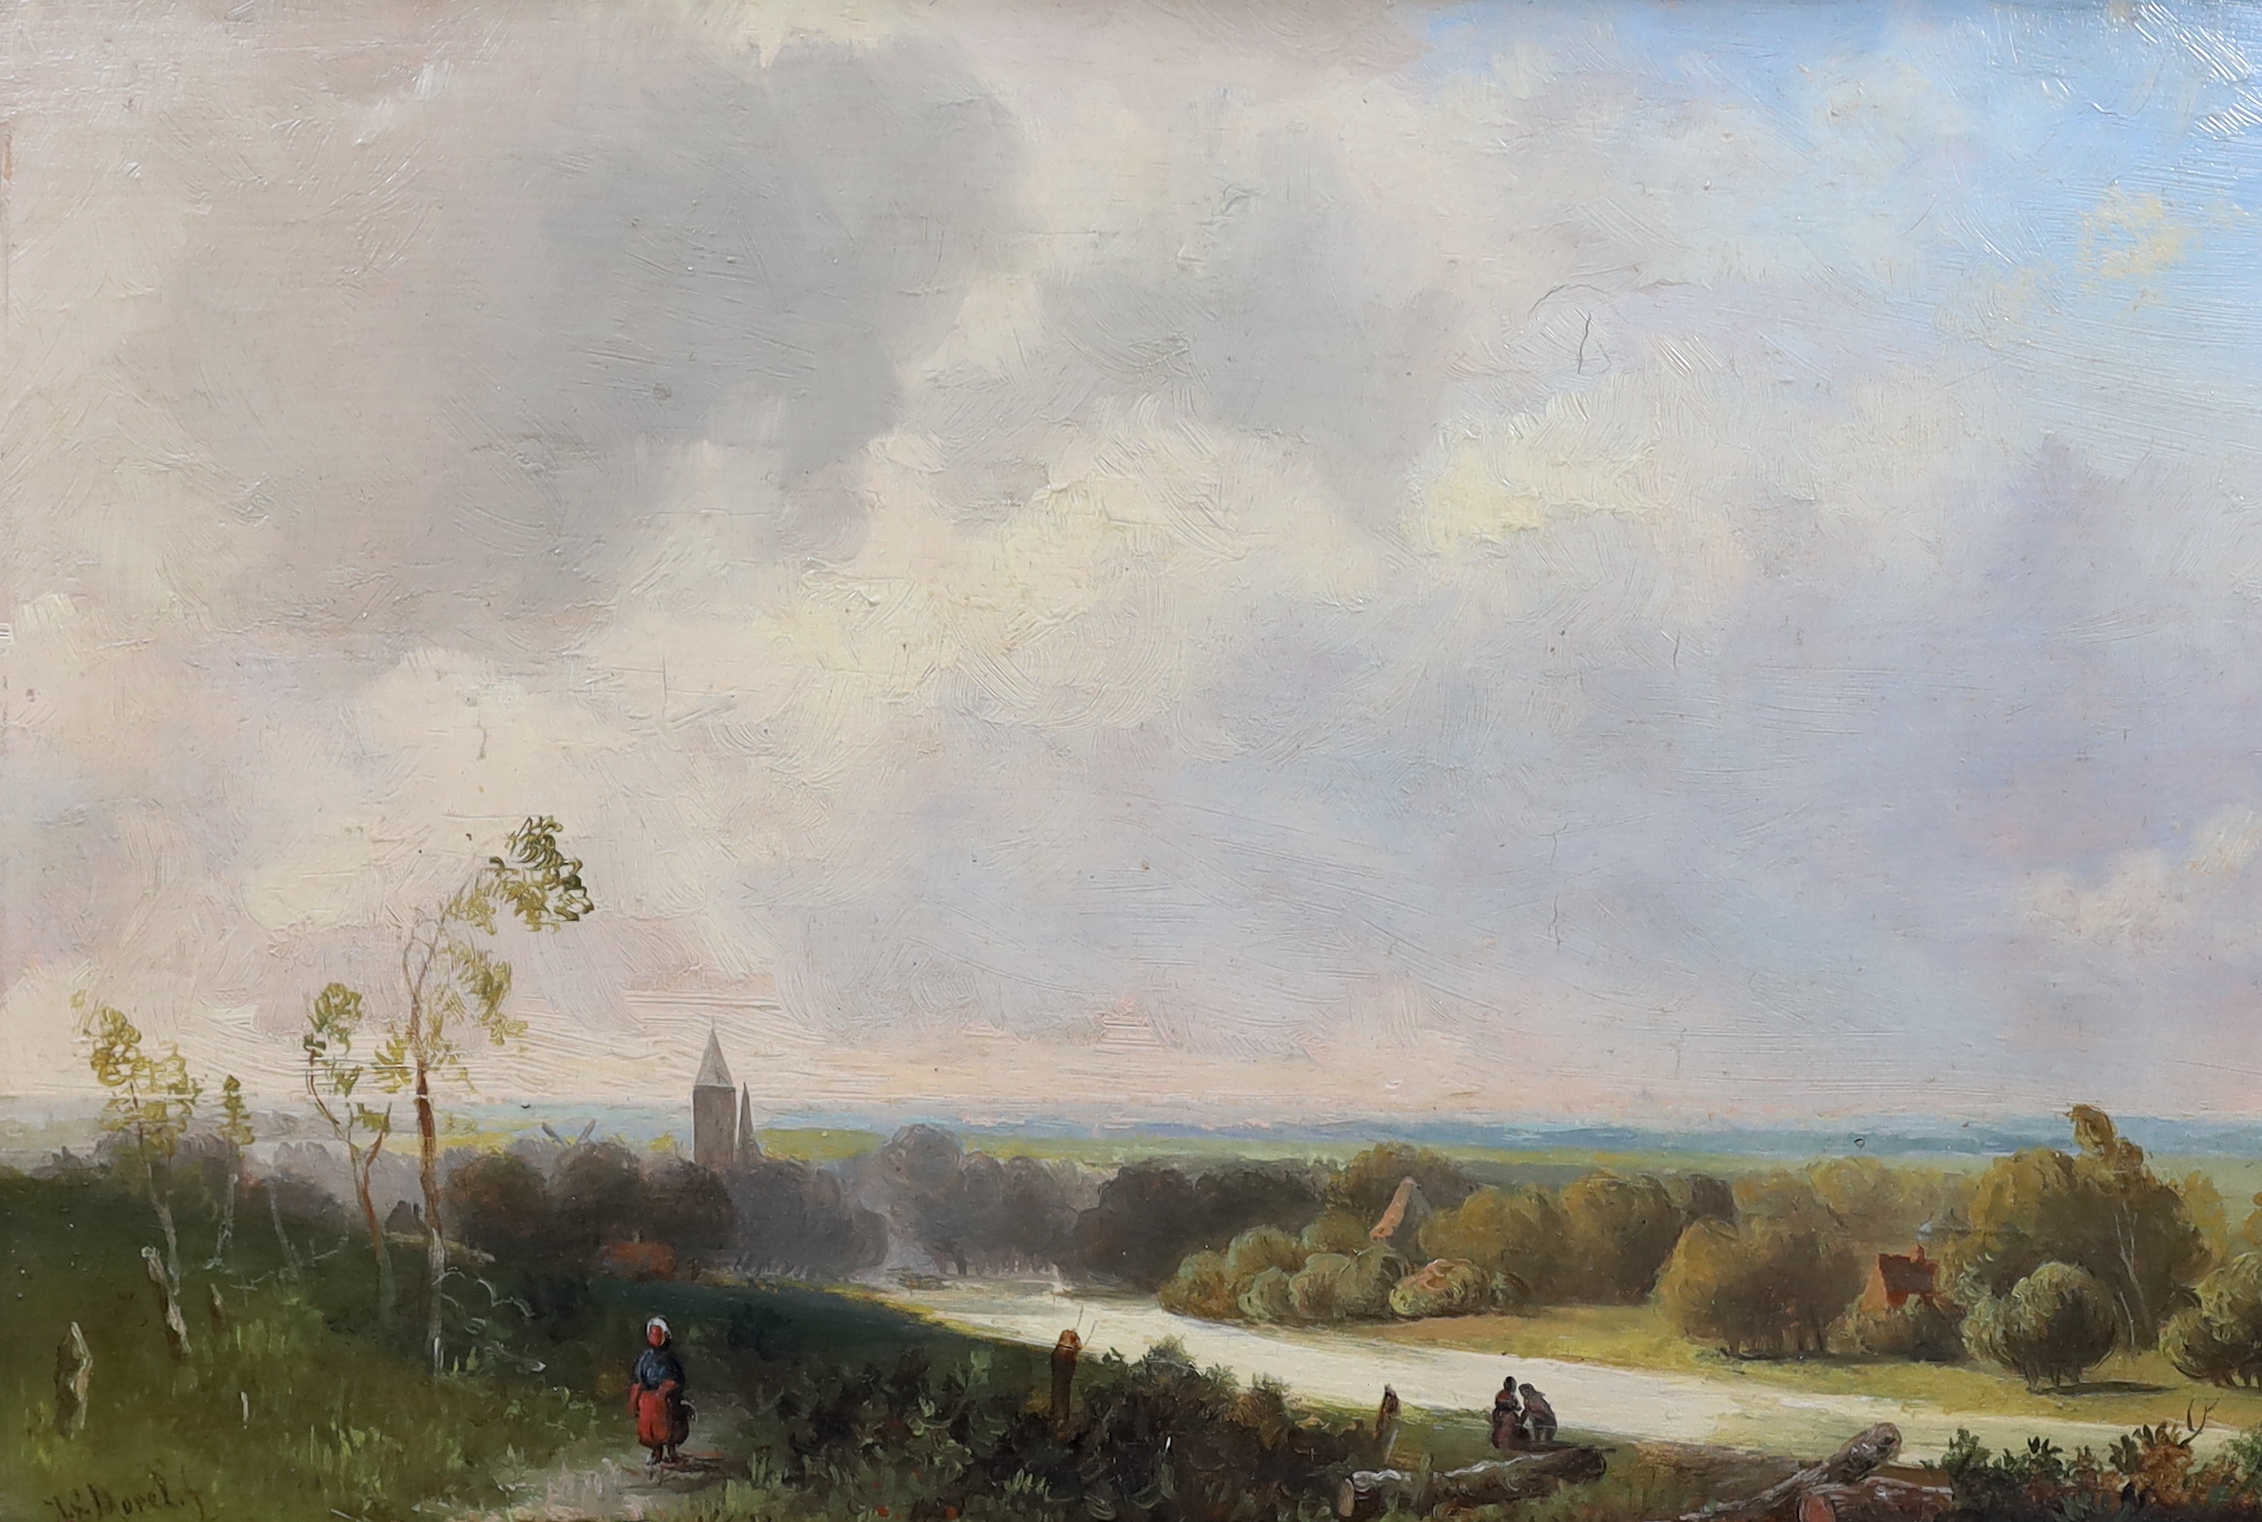 Jan Evert Morel II (Dutch, 1835-1905), Figures in an open landscape, oil on oak panel, 22 x 32cm